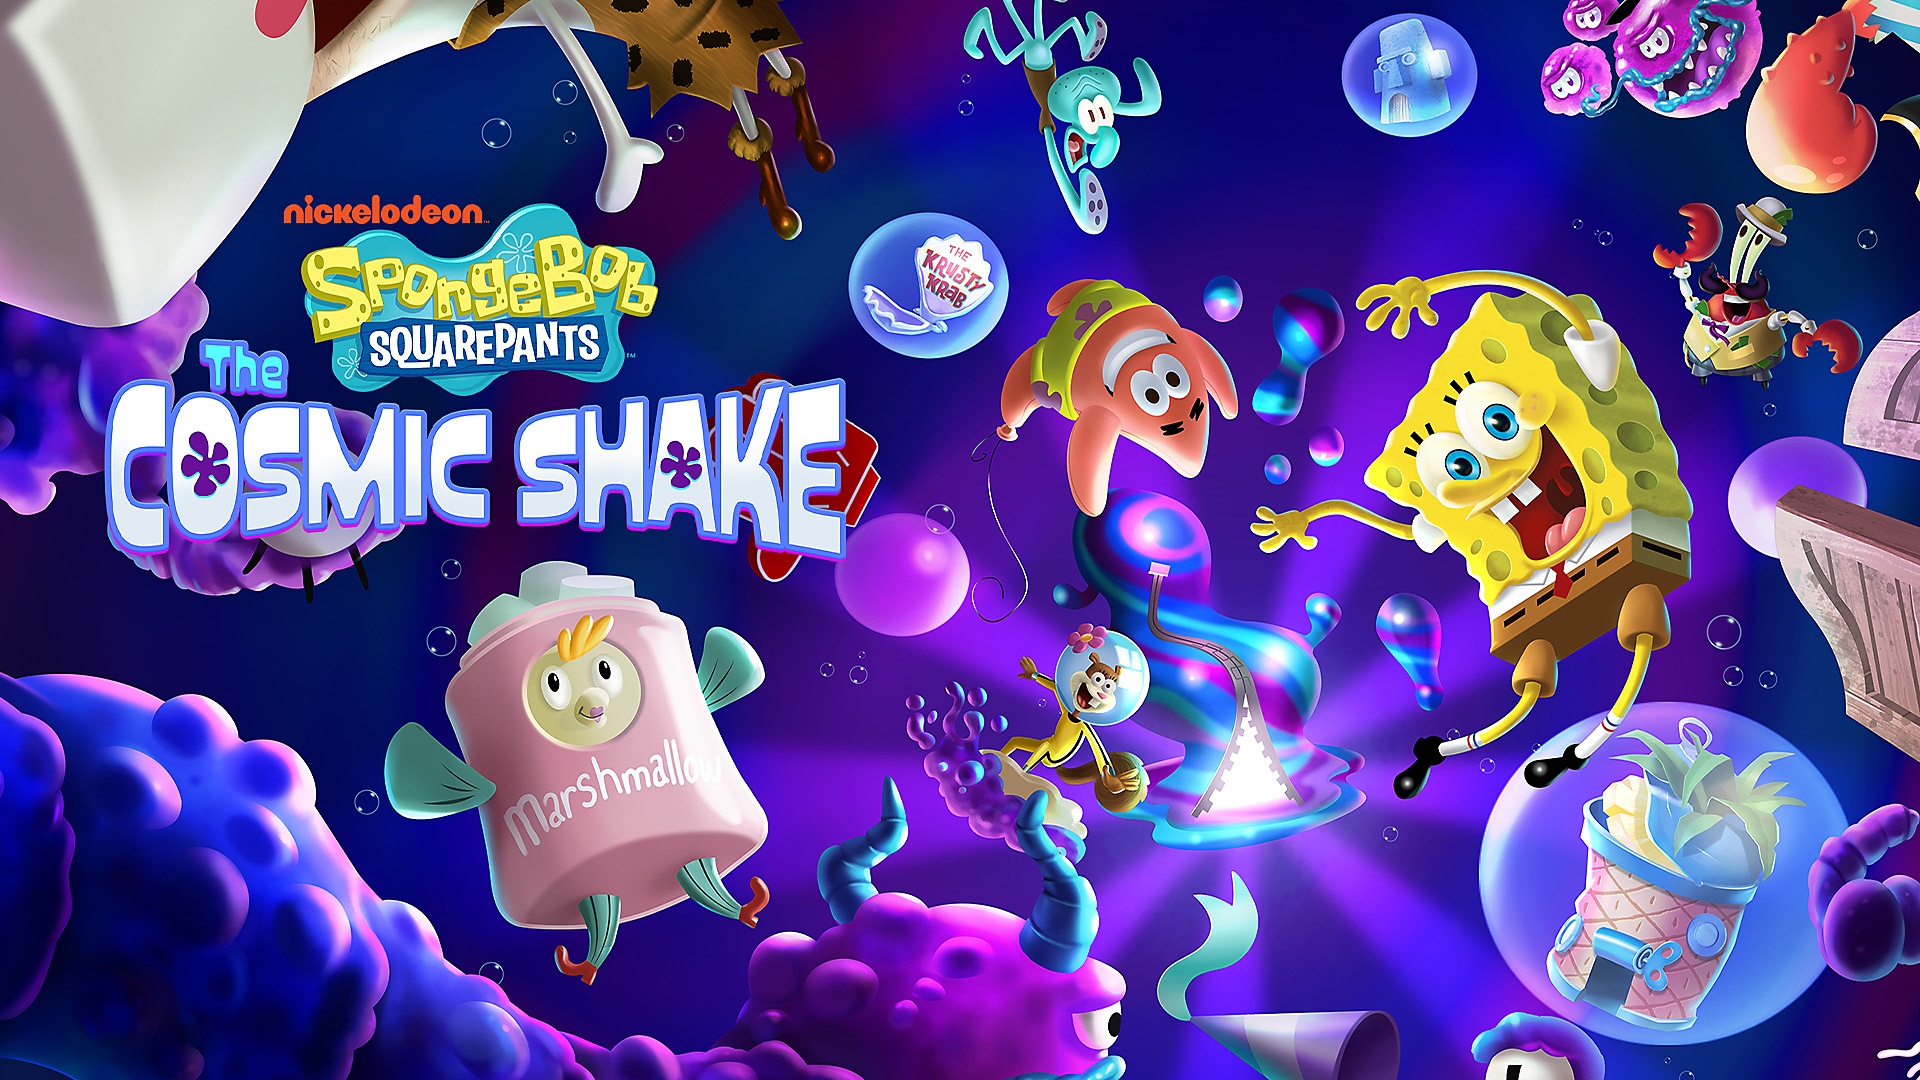 Bob l'éponge, Patrick, et d'autres personnages flottent dans le cosmos sous-marin dans SpongeBob SquarePants: The Cosmic Shake sur PS4 et PS5